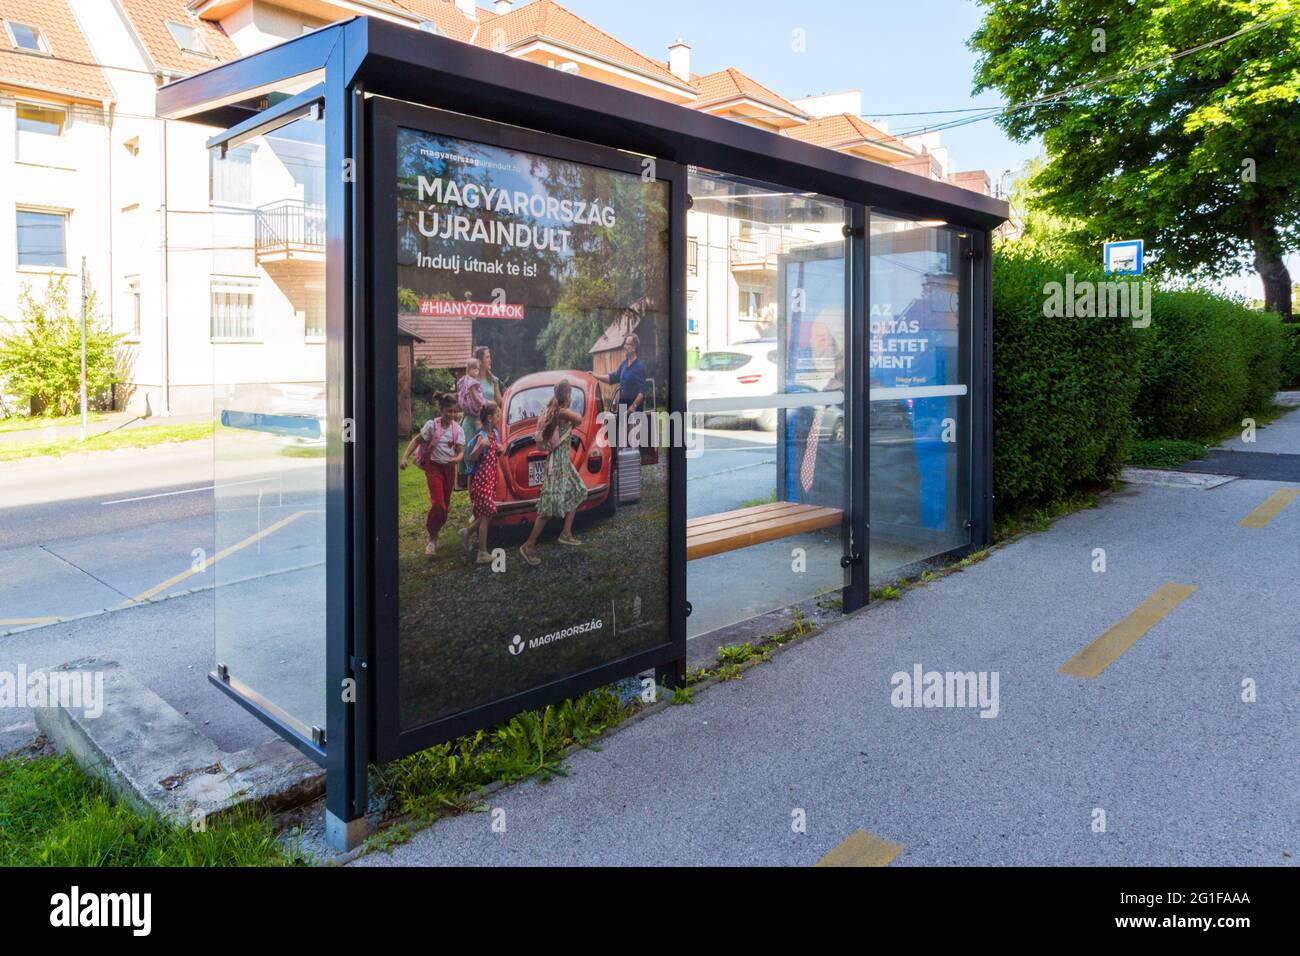 Magyarorszag ujraindult (Ungarn hat wieder aufgenommen) Werbekampagne der Regierung auf Glas der Bushaltestelle, nachdem die Beschränkungen um 19. Covid19 aufgehoben wurden, Ungarn Stockfoto